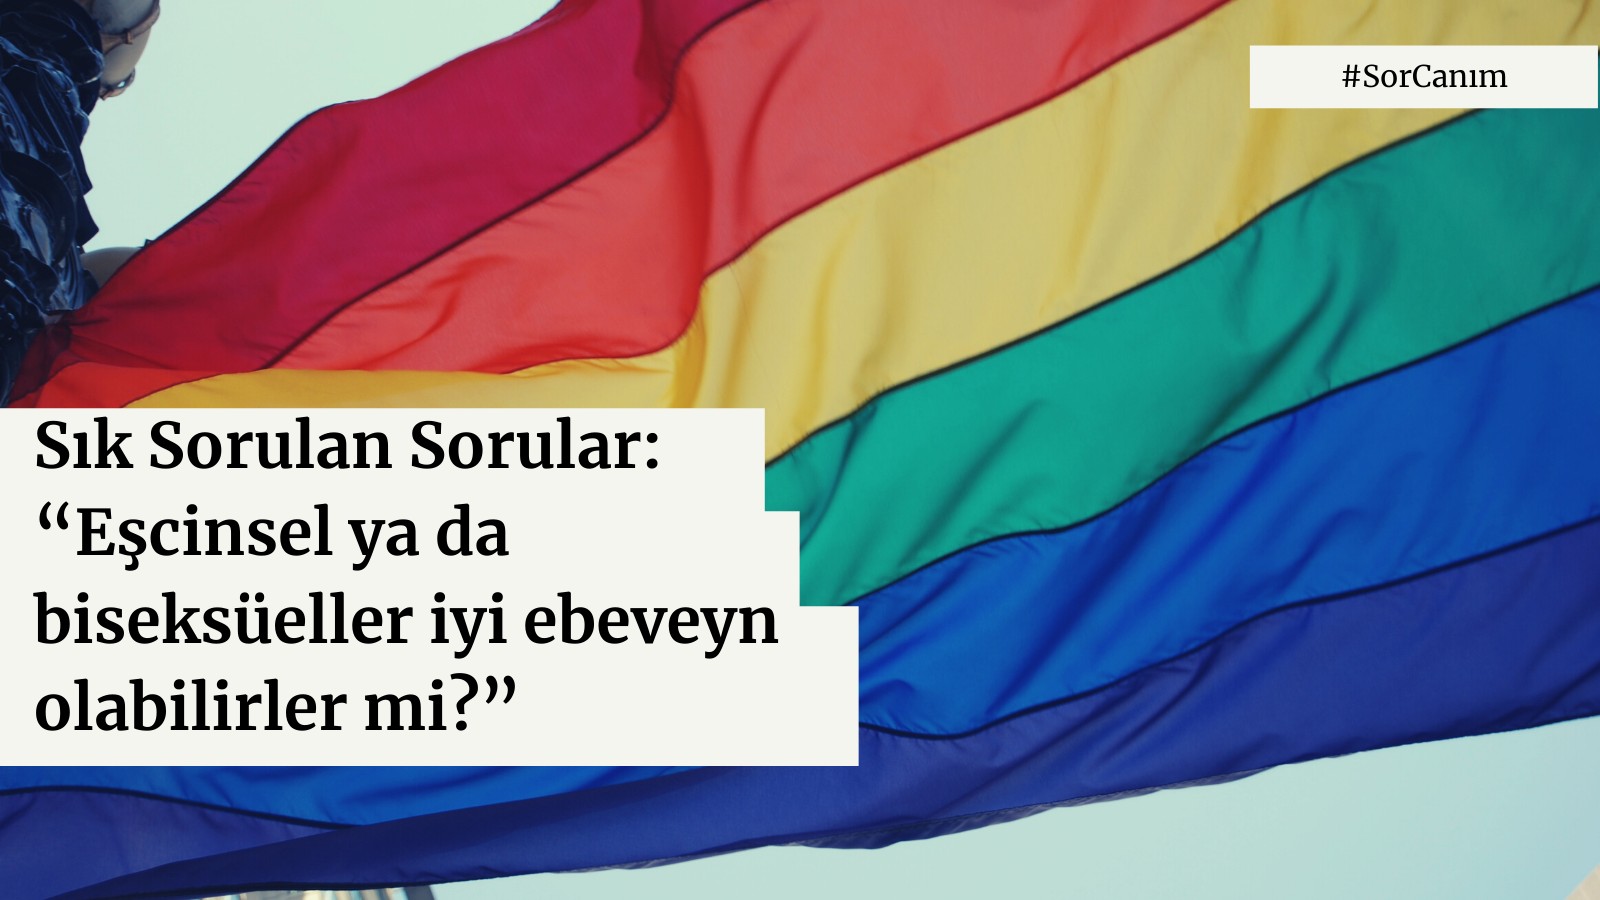 Sor Canım: Kimi eşcinsel ve biseksüeller için açılma süreci neden zordur? Kaos GL - LGBTİ+ Haber Portalı